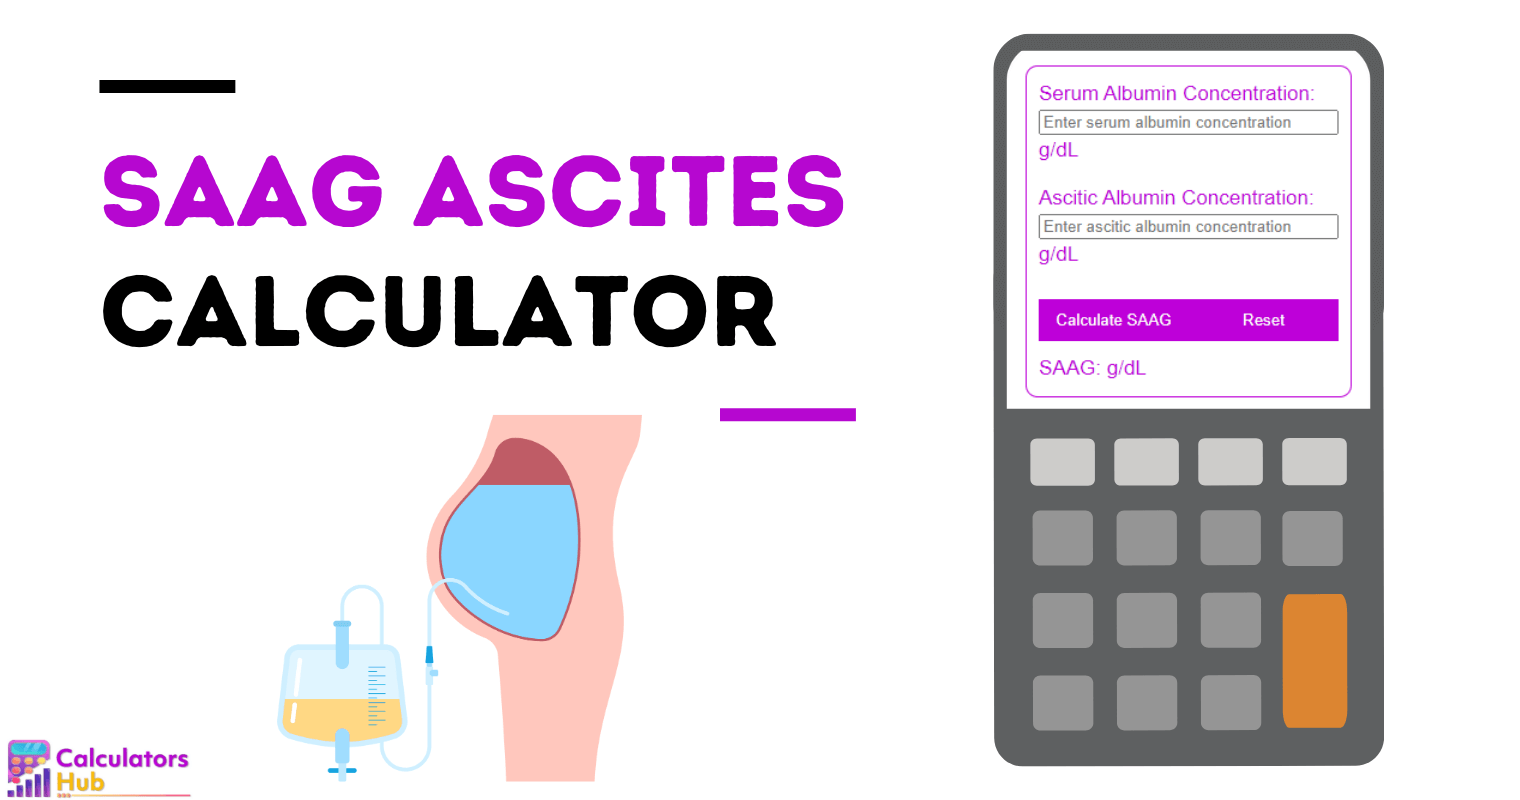 SAAG Ascites Calculator